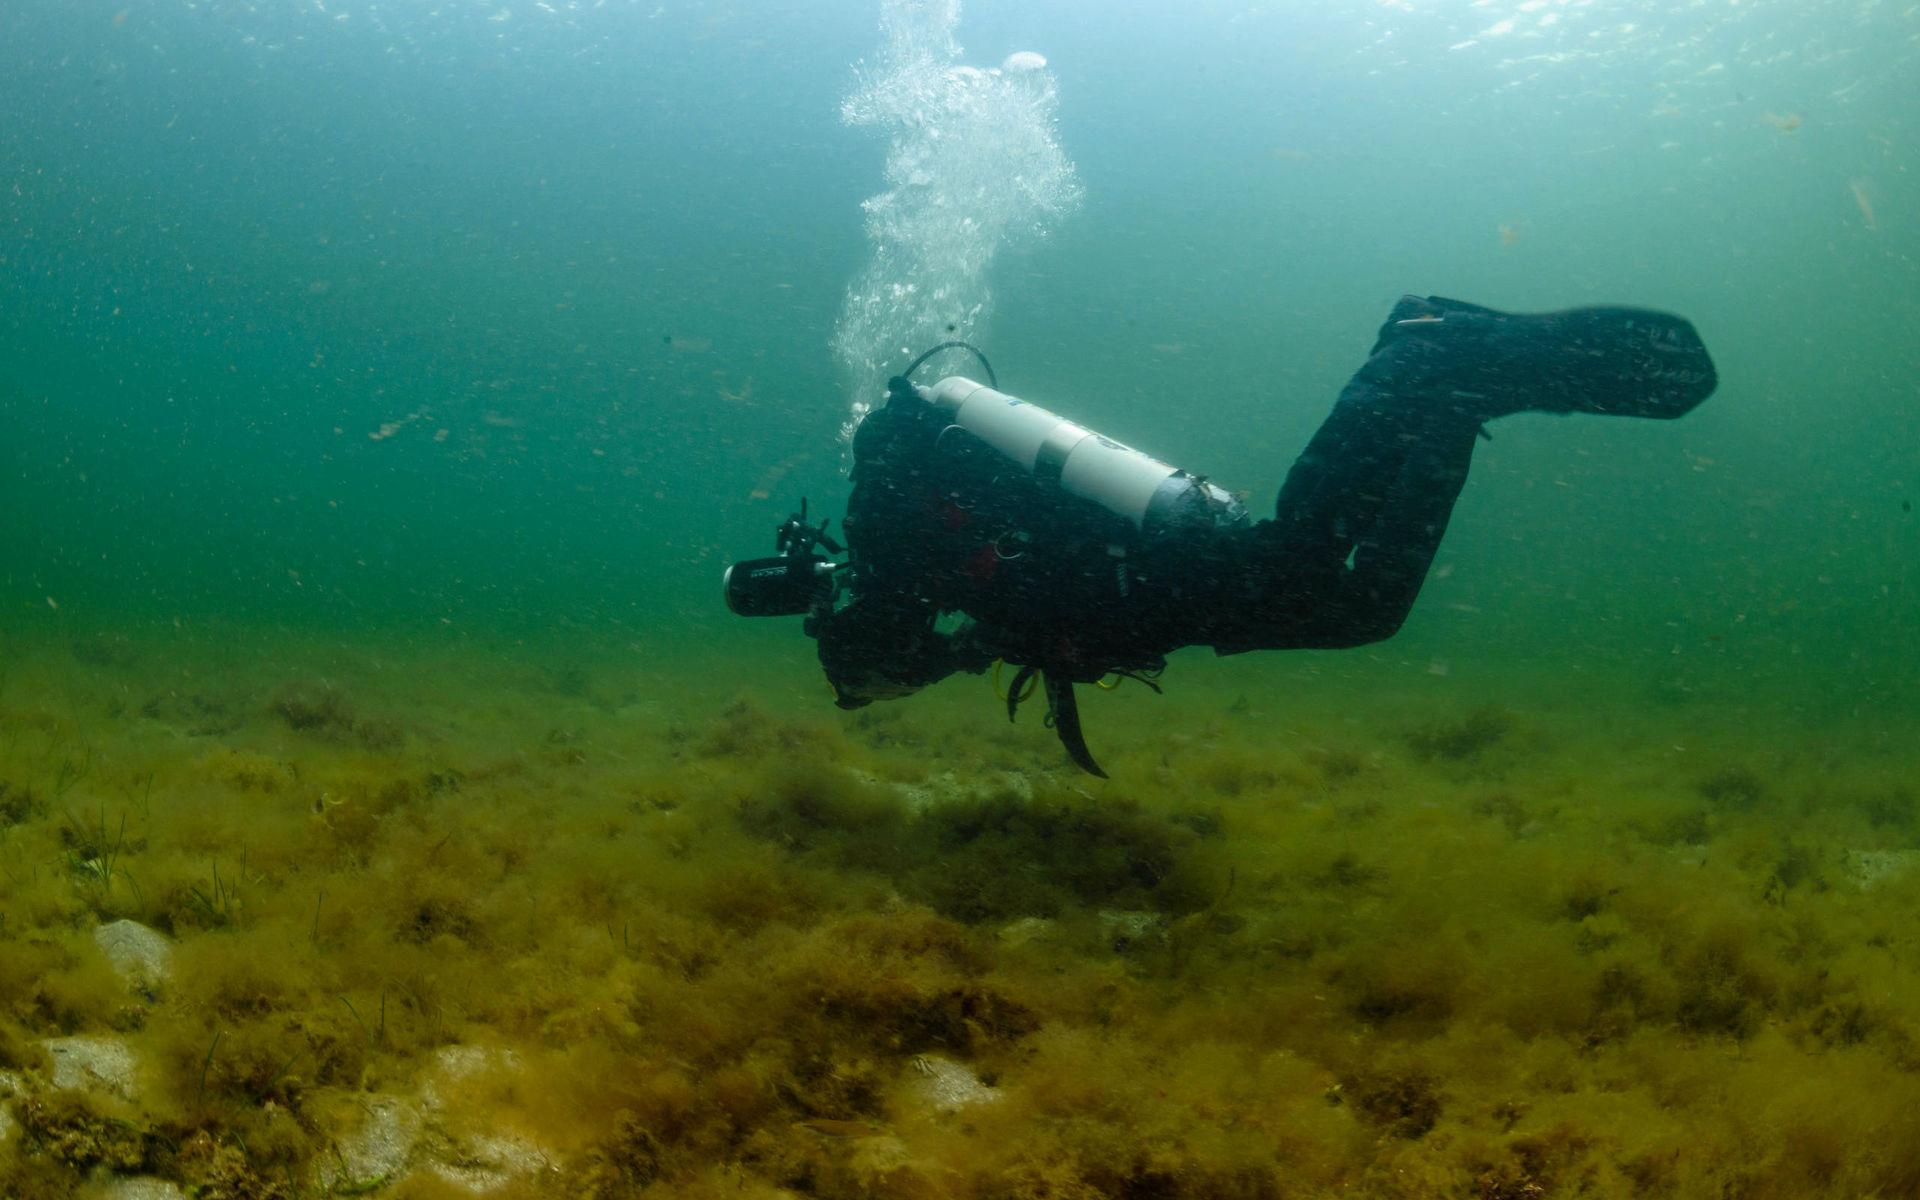 Första dyket – efter 20 års uppehåll – visade en dramatisk förändring i den marina miljön utanför Bohuskusten. Annette Seldén beskriver det som att hon fick en chock.